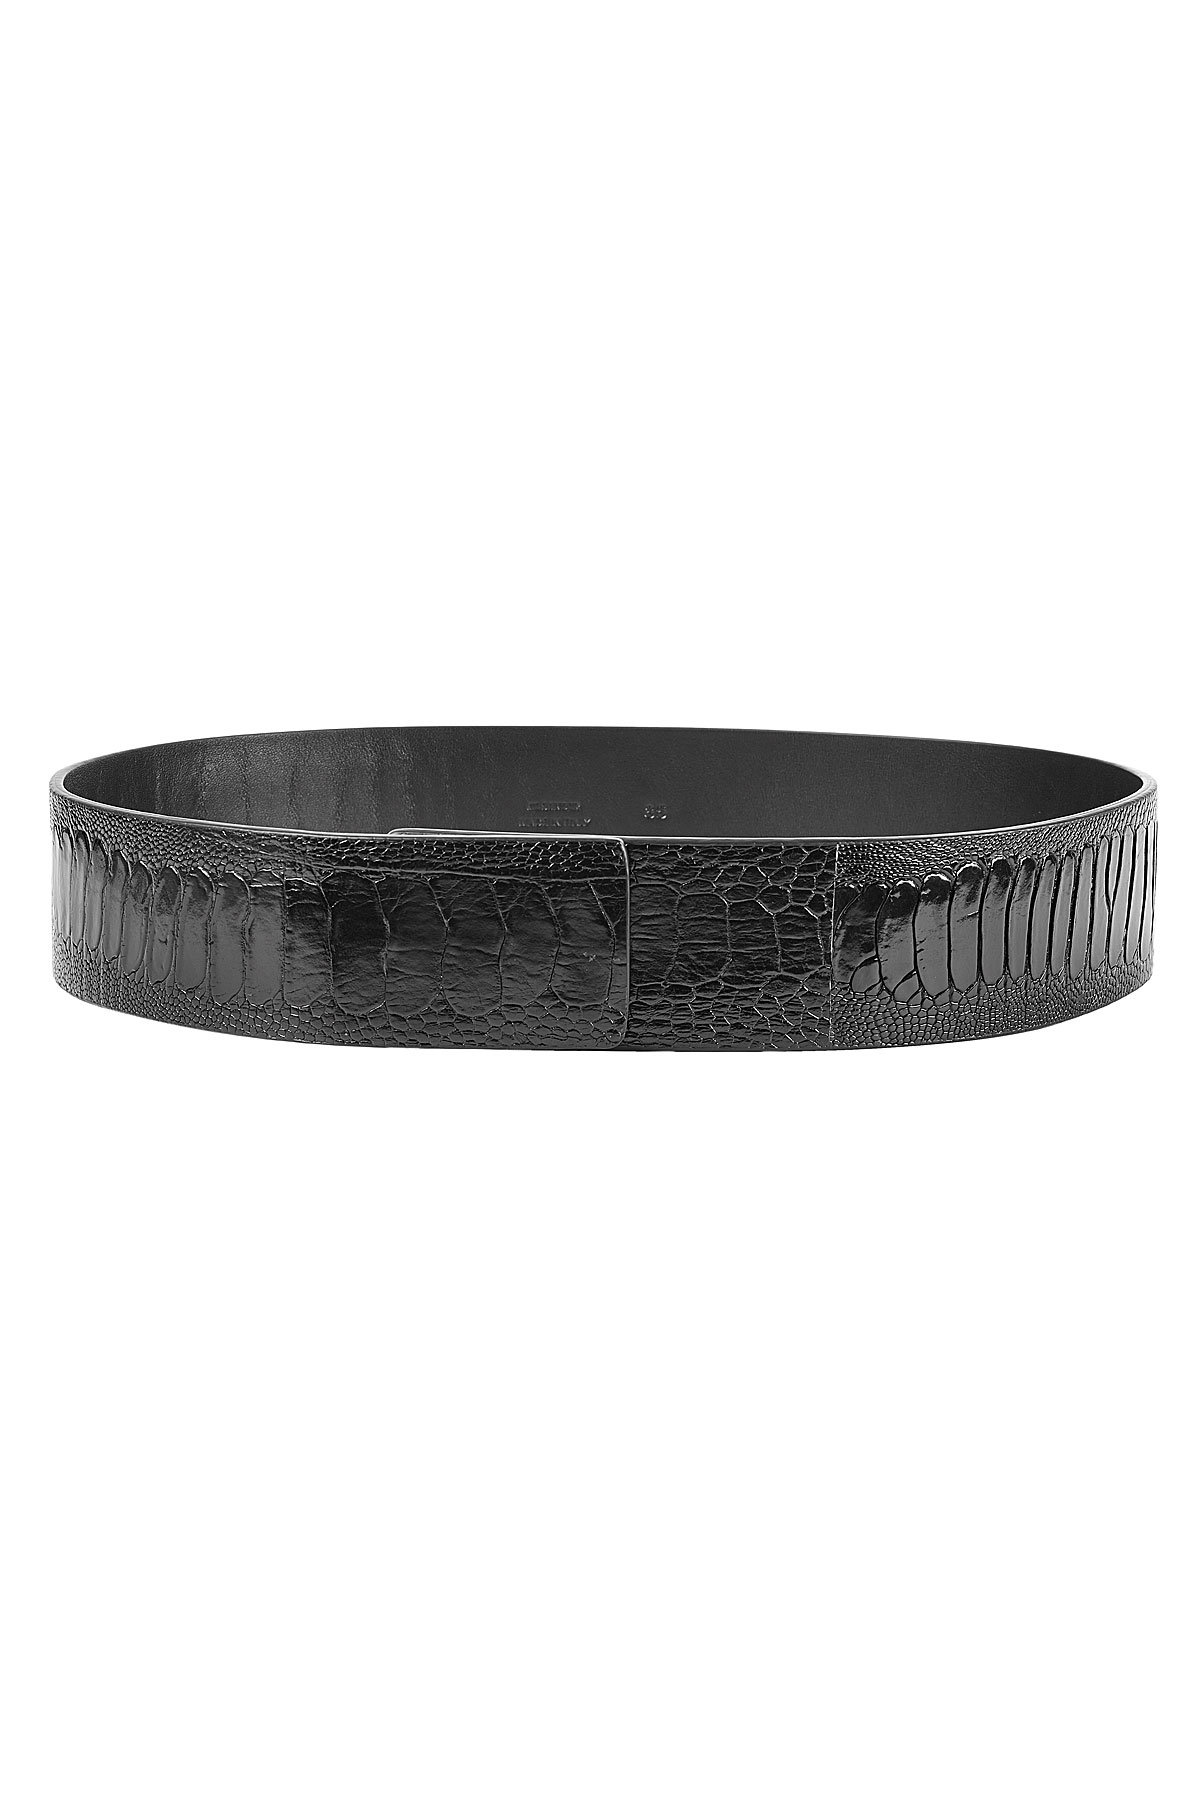 Jil Sander - Embossed Leather Belt